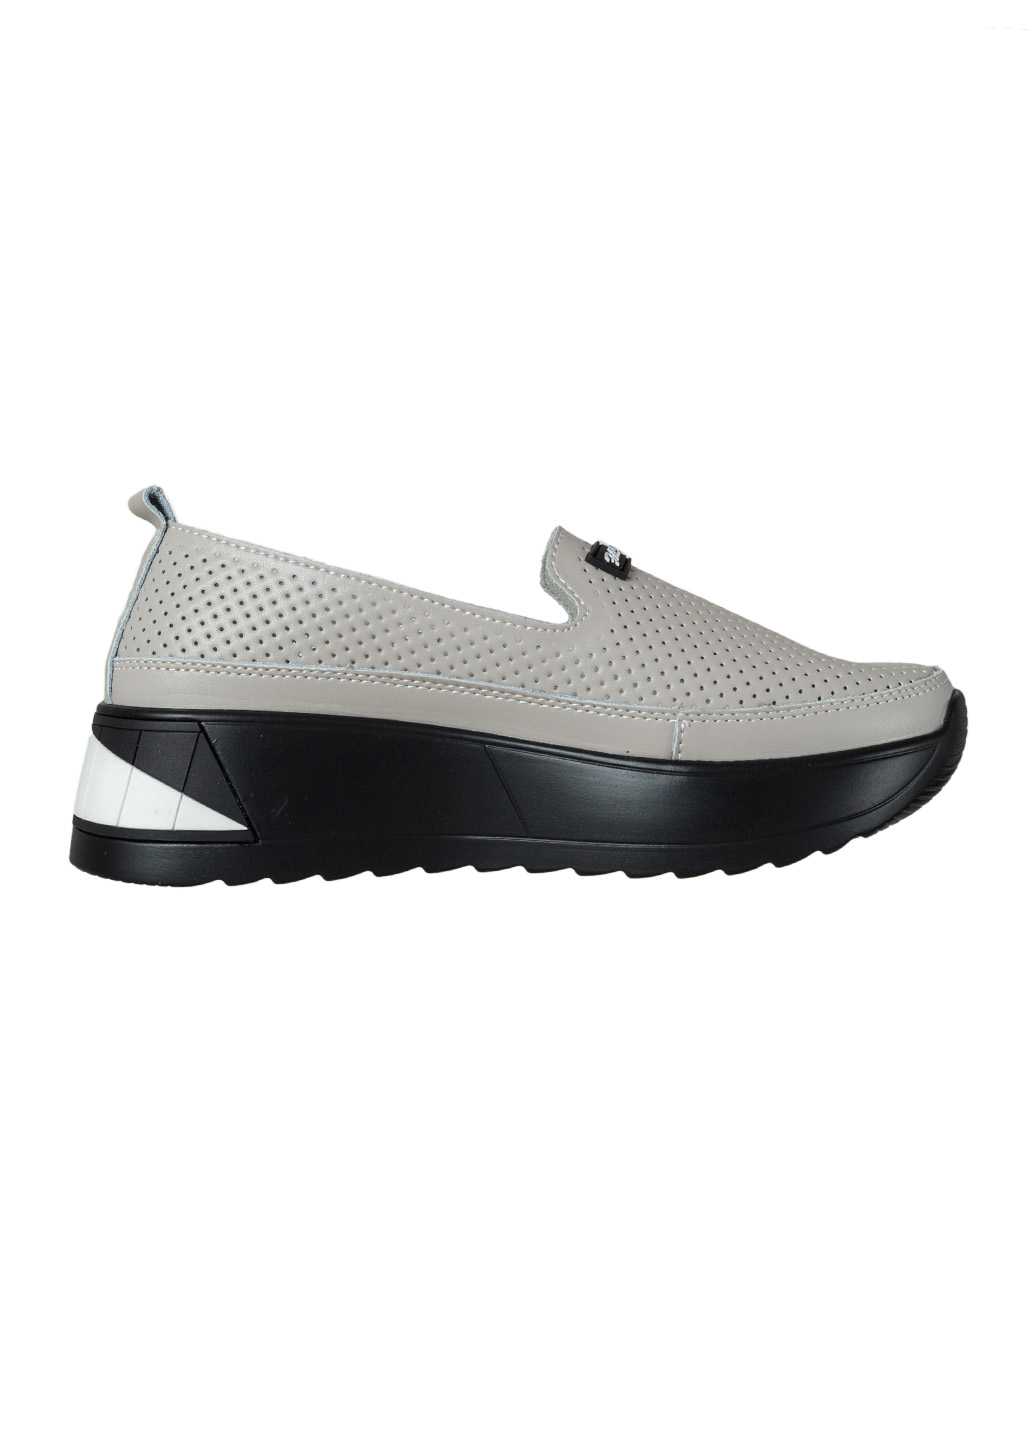 Жіночі туфлі Lifexpert сірого кольору перфорація